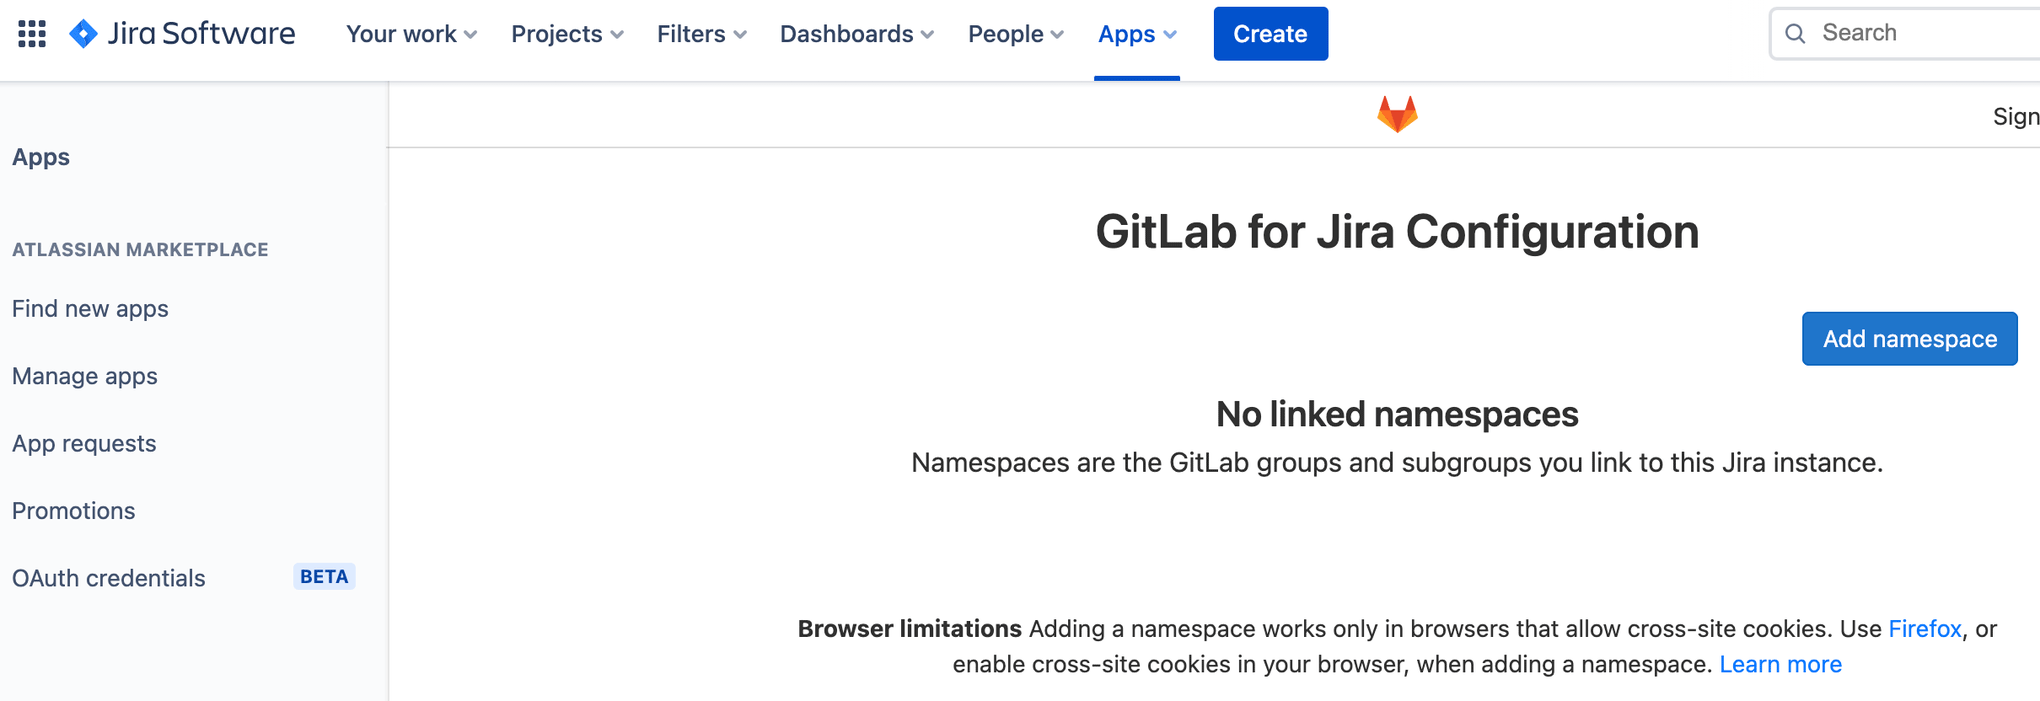 Écran d'ajout d'un espace de noms à votre configuration GitLab dans Jira Software